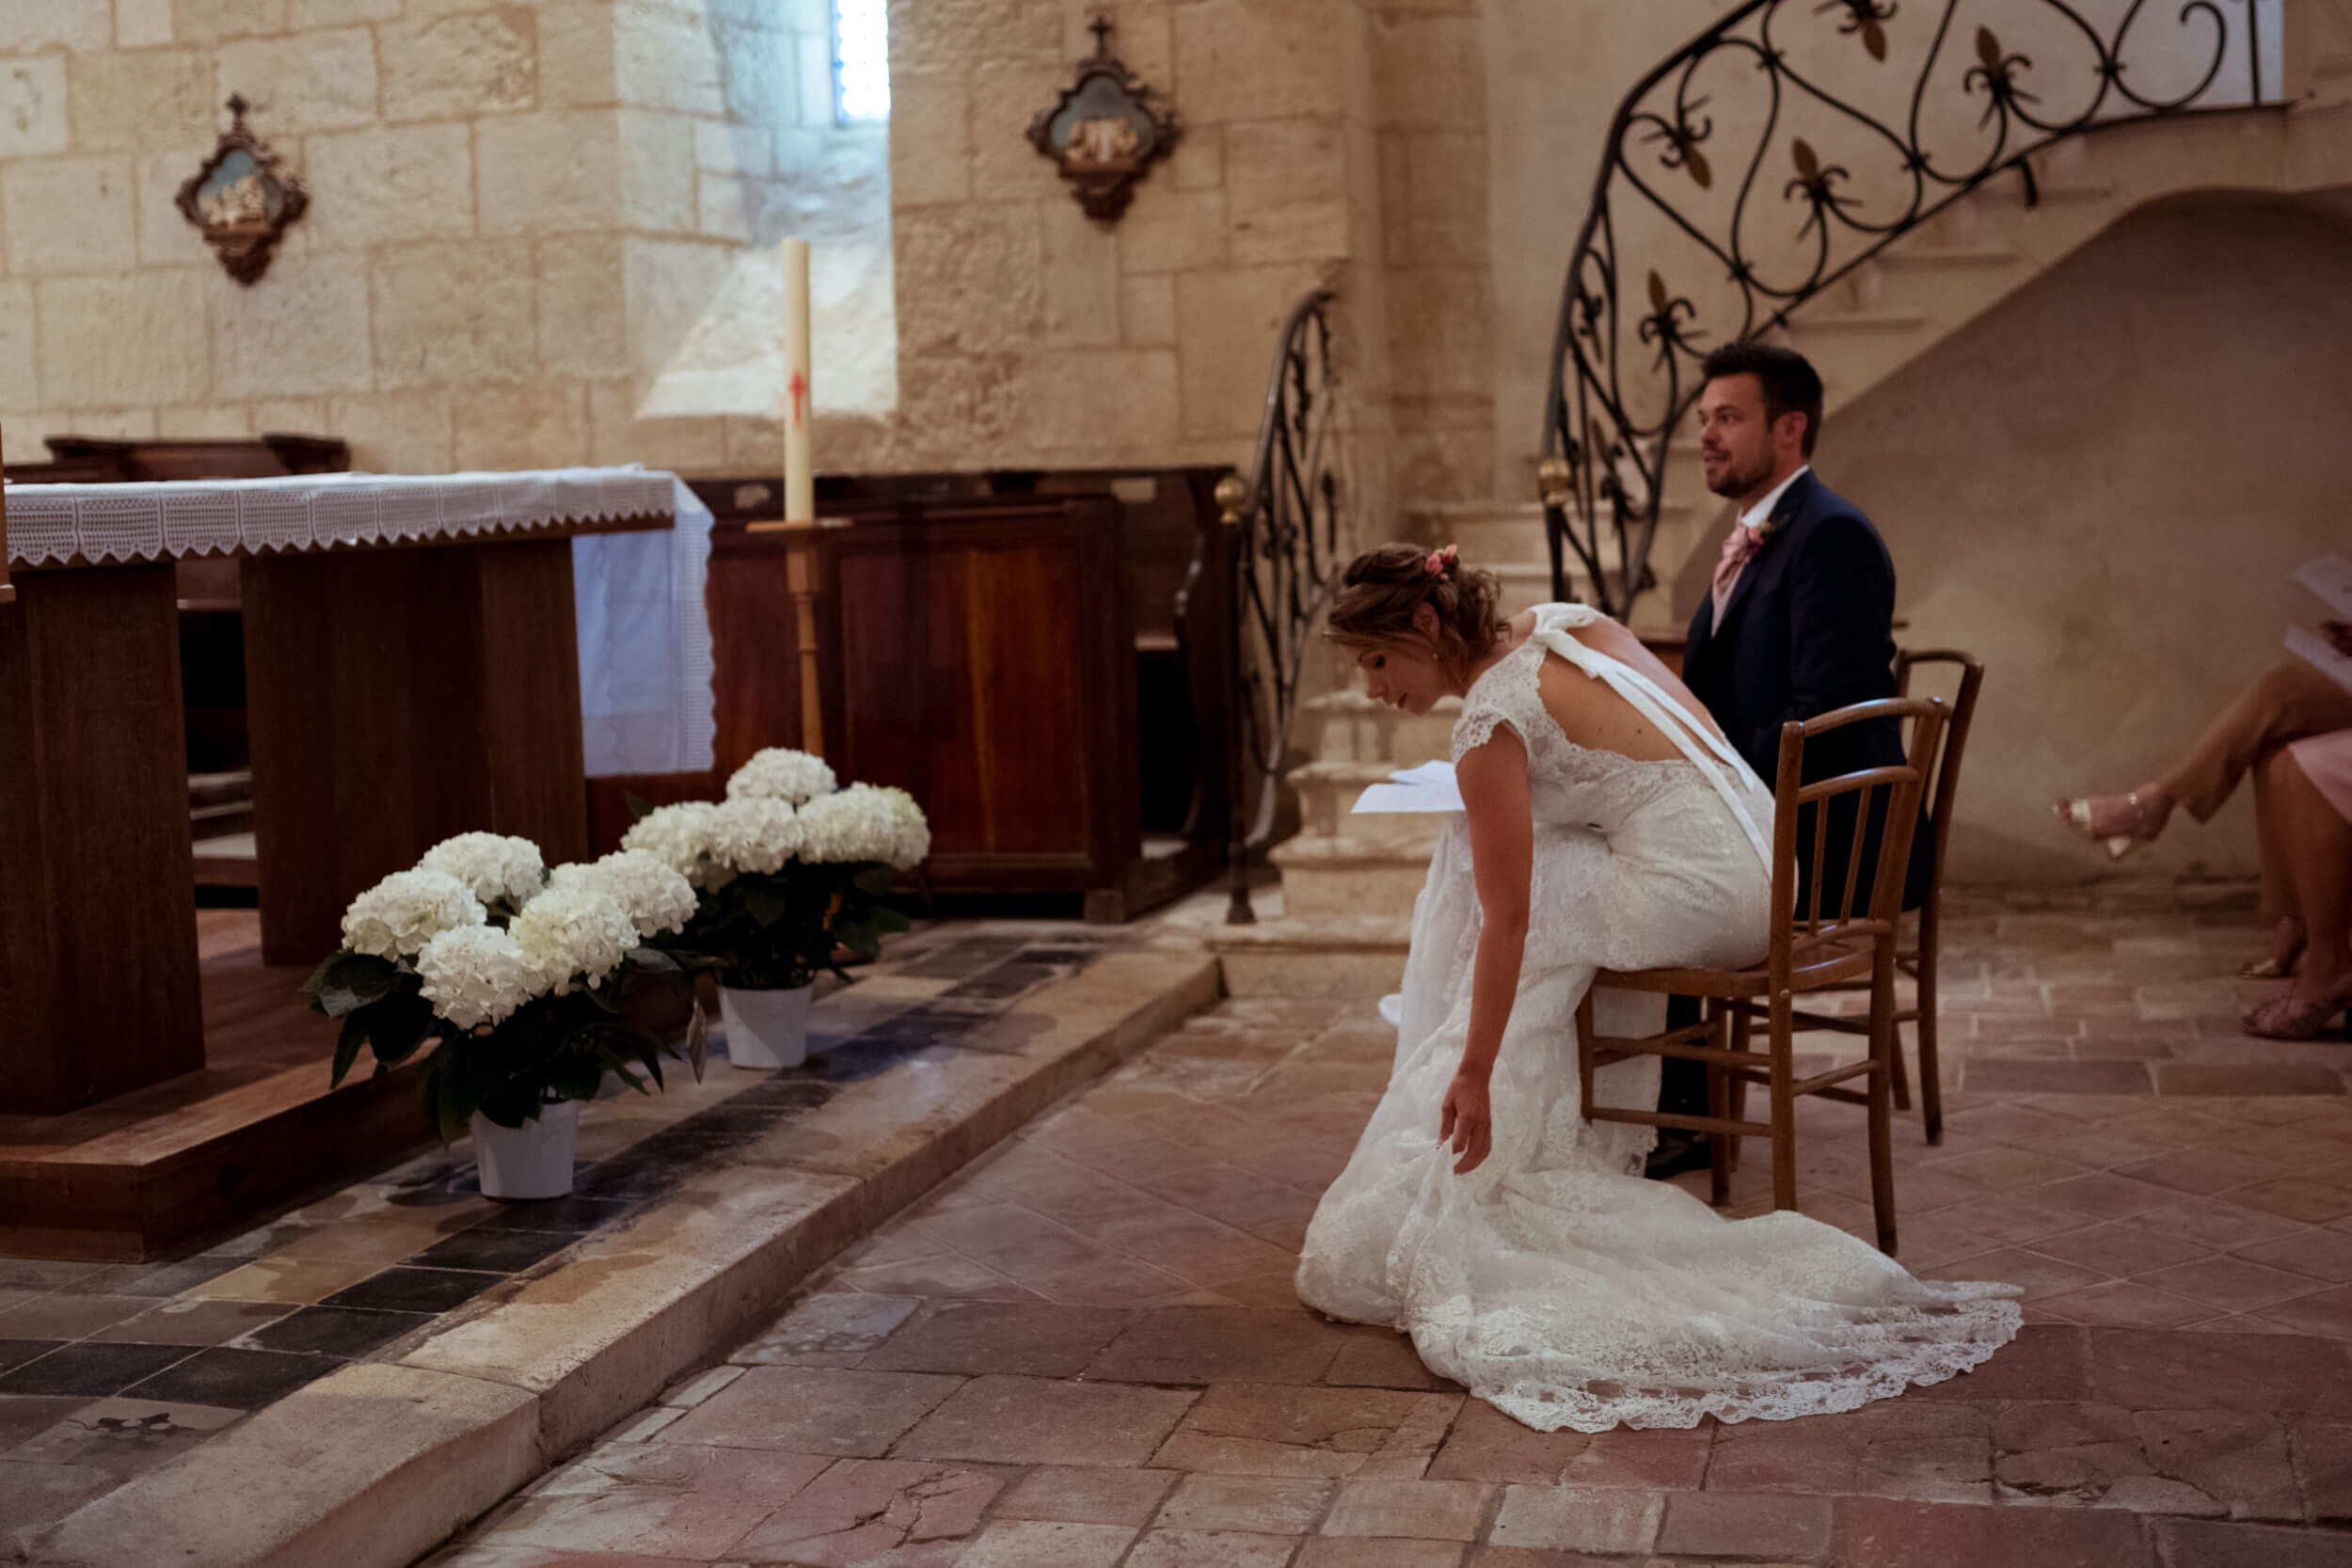 Puyrigaud photographe mariage wedding photographer église